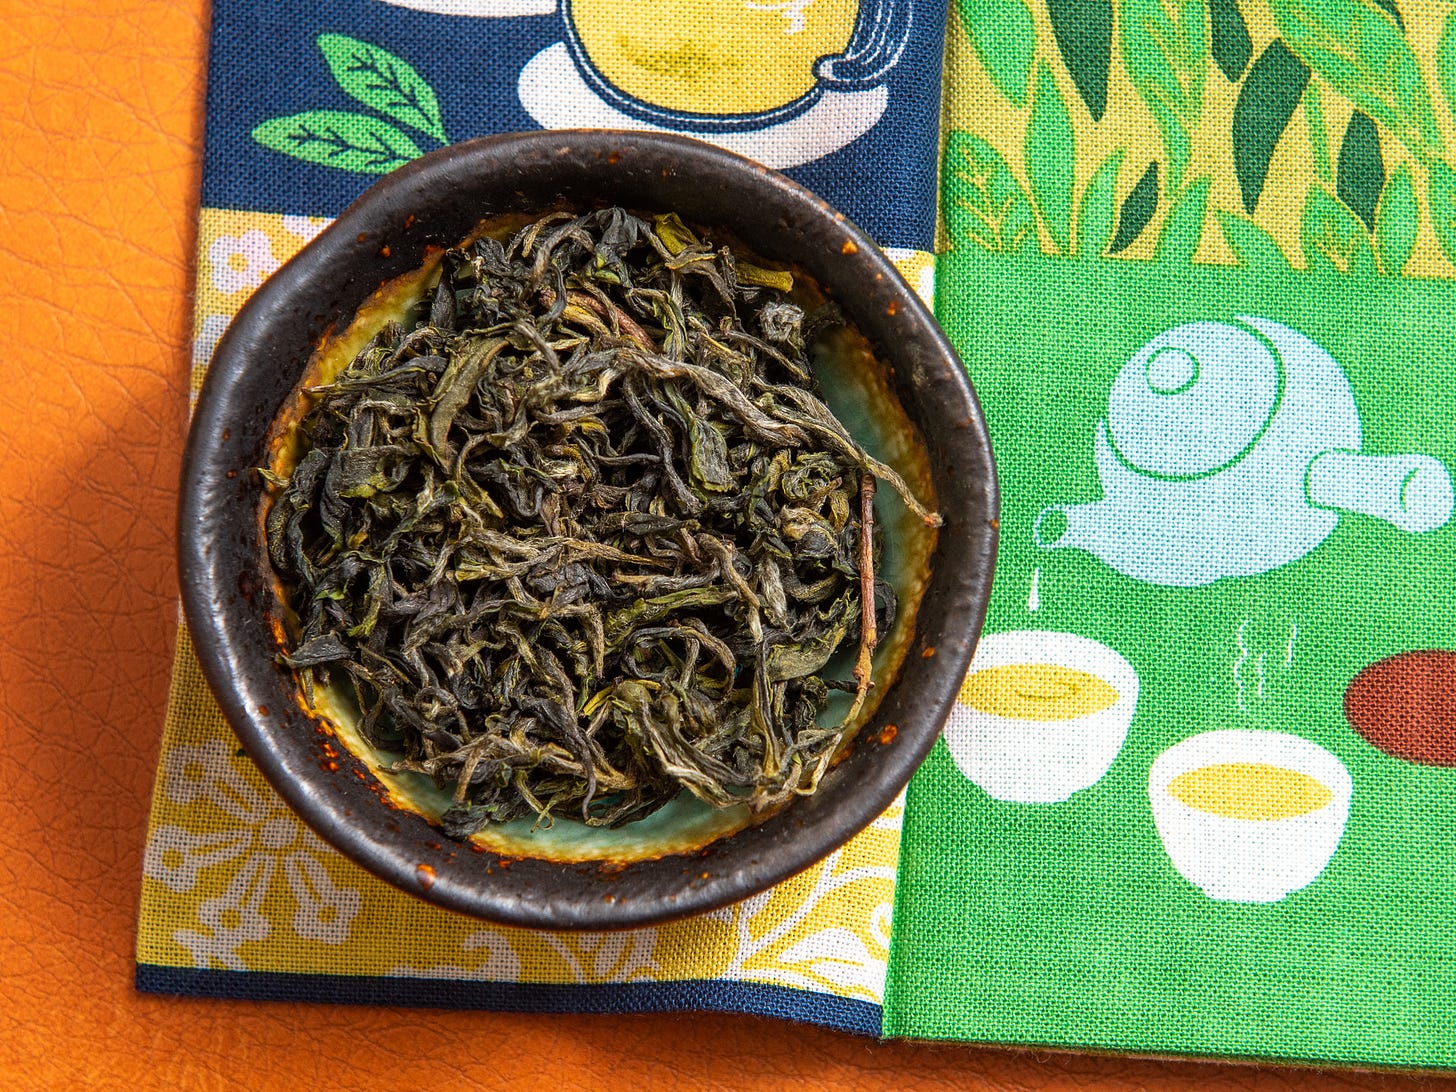 ID: Bi luo chun green tea loose leaves